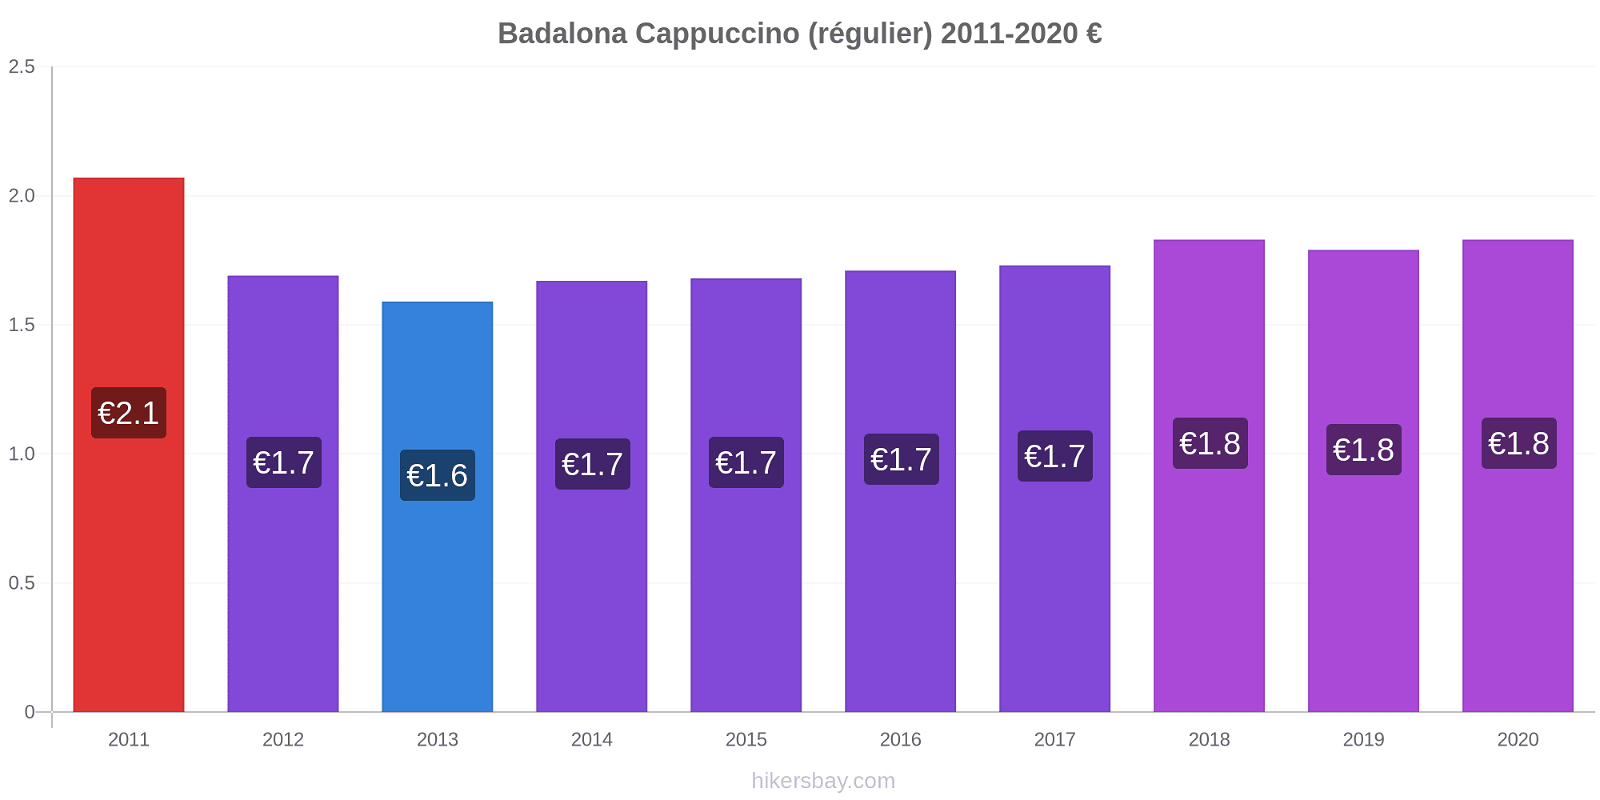 Badalona changements de prix Cappuccino (régulier) hikersbay.com